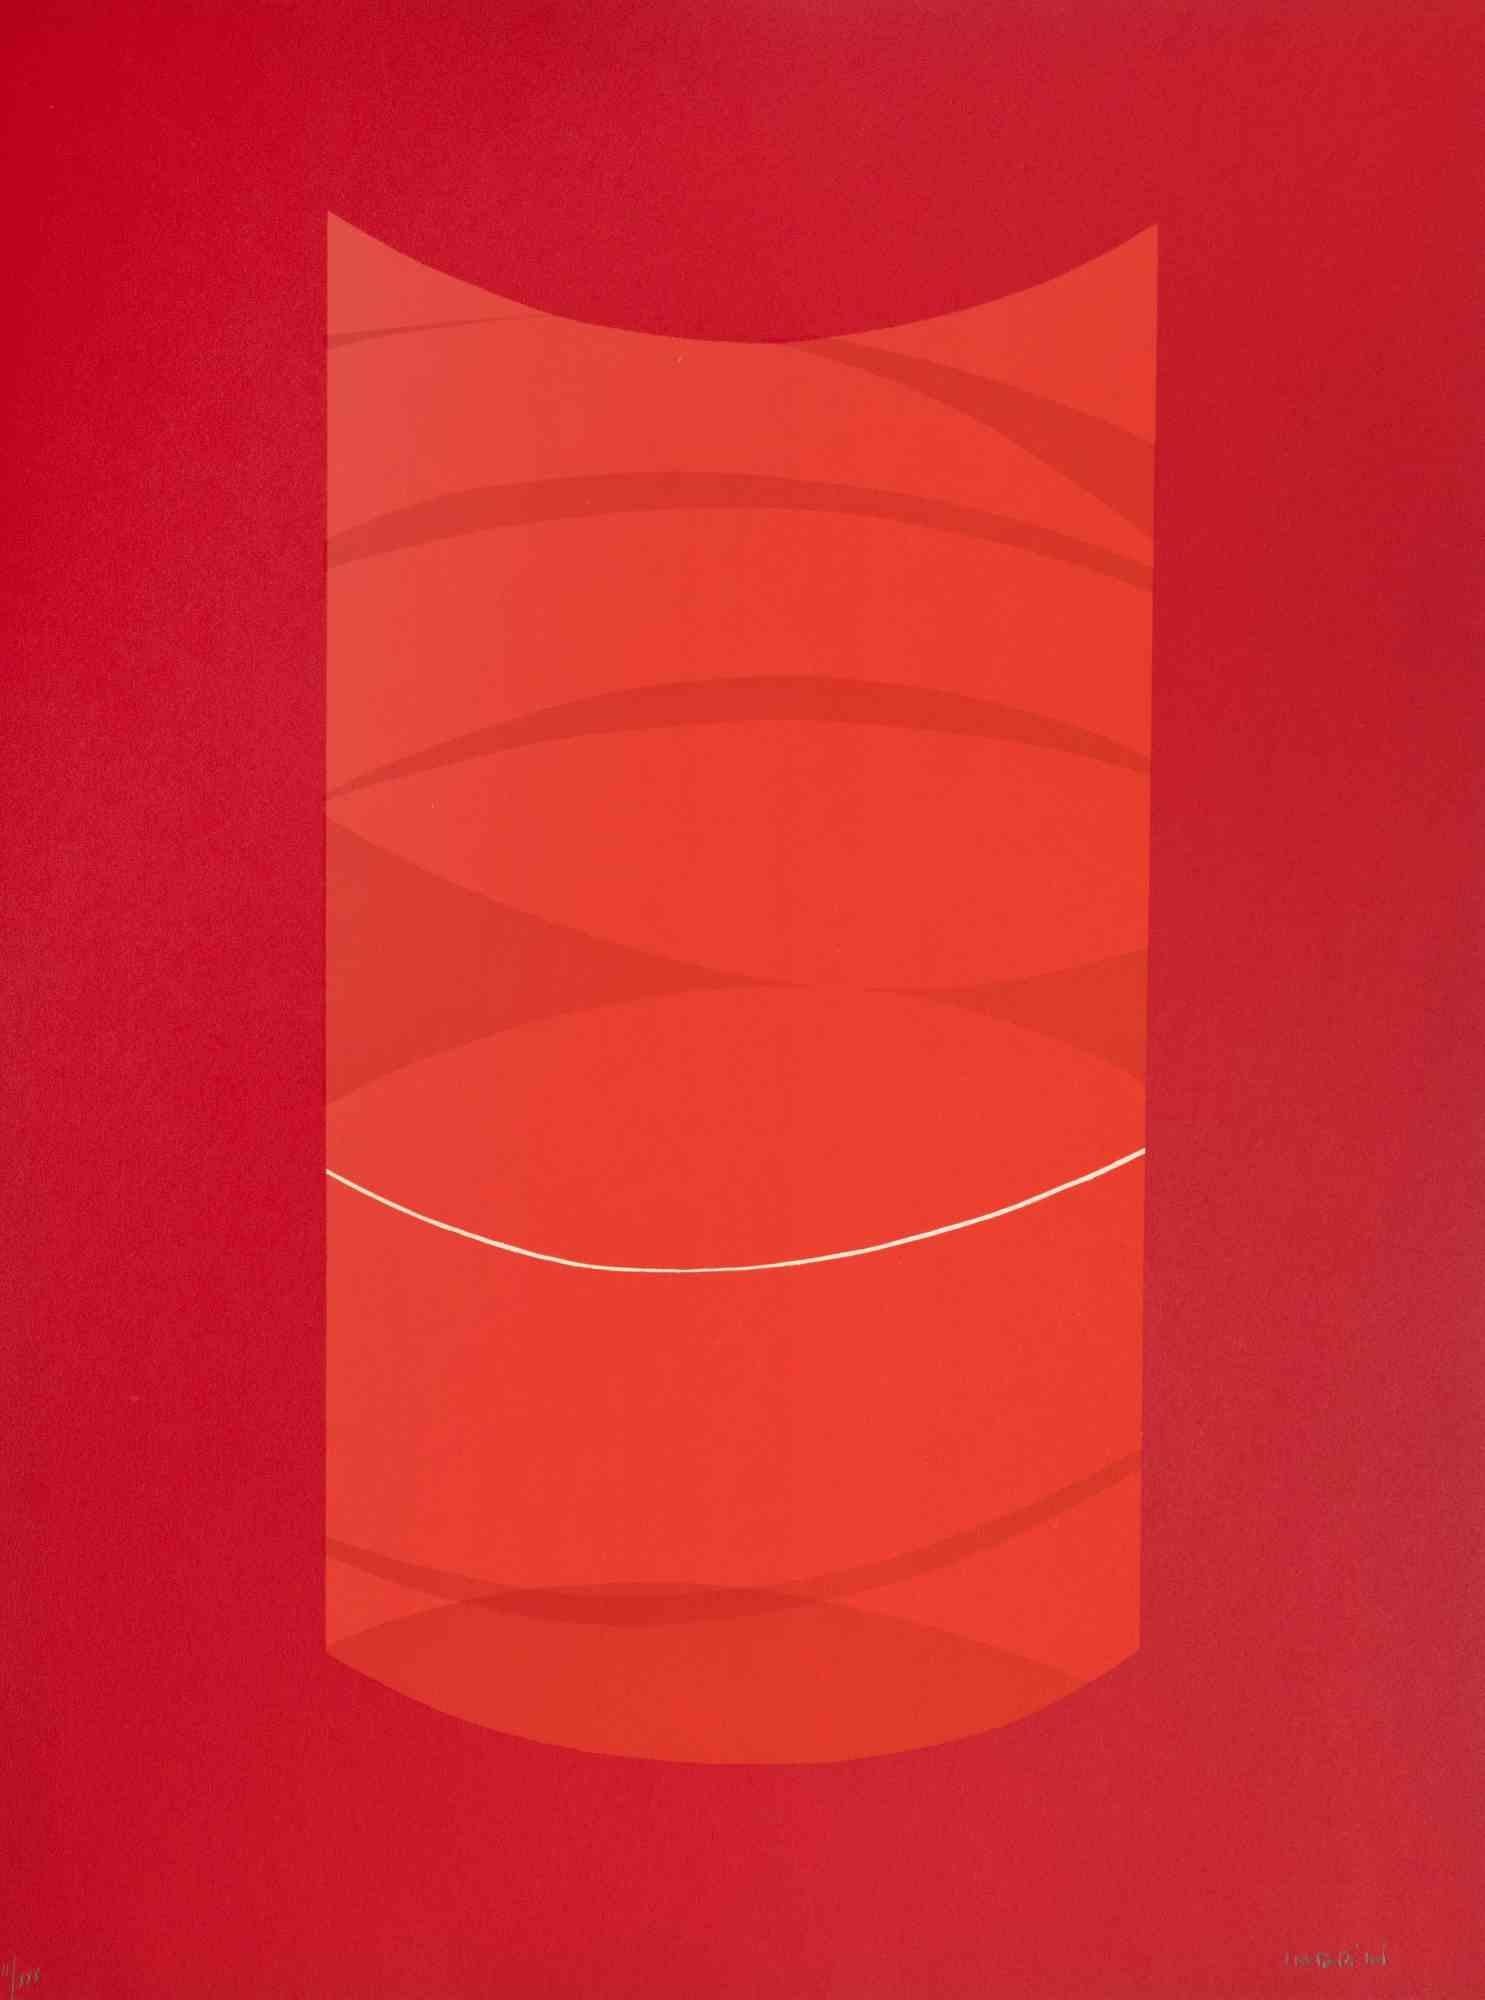 Red One ist ein zeitgenössisches Kunstwerk von Lorenzo Indrimi aus den 1970er Jahren.

Gemischtfarbige Lithographie.

Am unteren Rand handsigniert und datiert.

Ausgabe von II/XXX